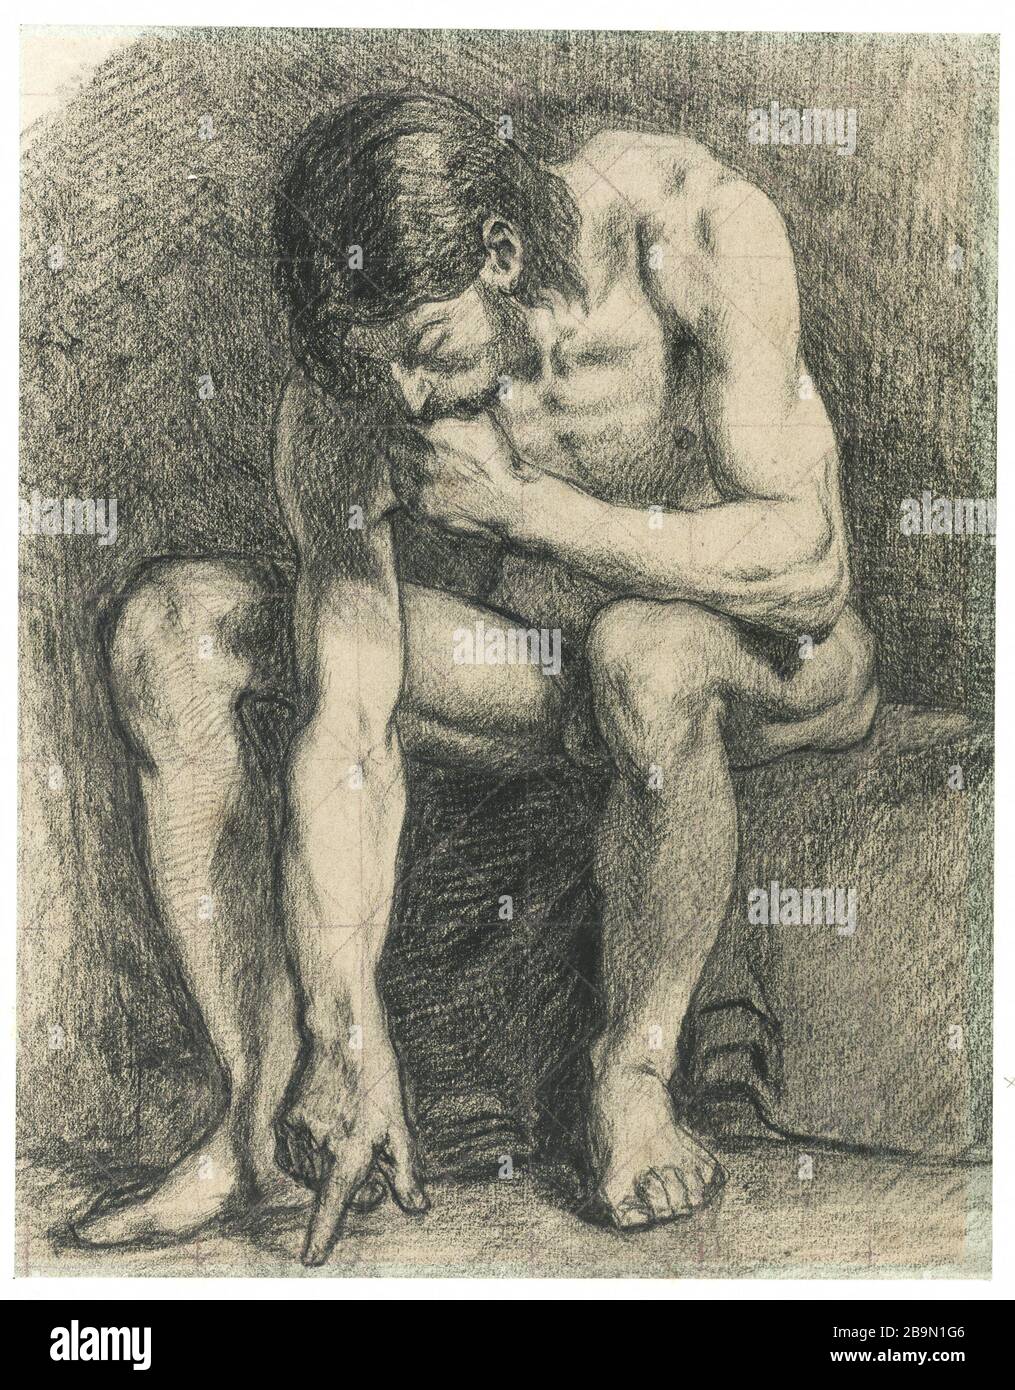 Homme nu assis, écrivant par terre avec son doigt Pierre Puvis de Chavannes (1824-1898). Homme assis nu, écrivant par terre avec son doigt. Crayon noir sur papier gris. Musée des Beaux-Arts de la Ville de Paris, Petit Palais. Foto Stock